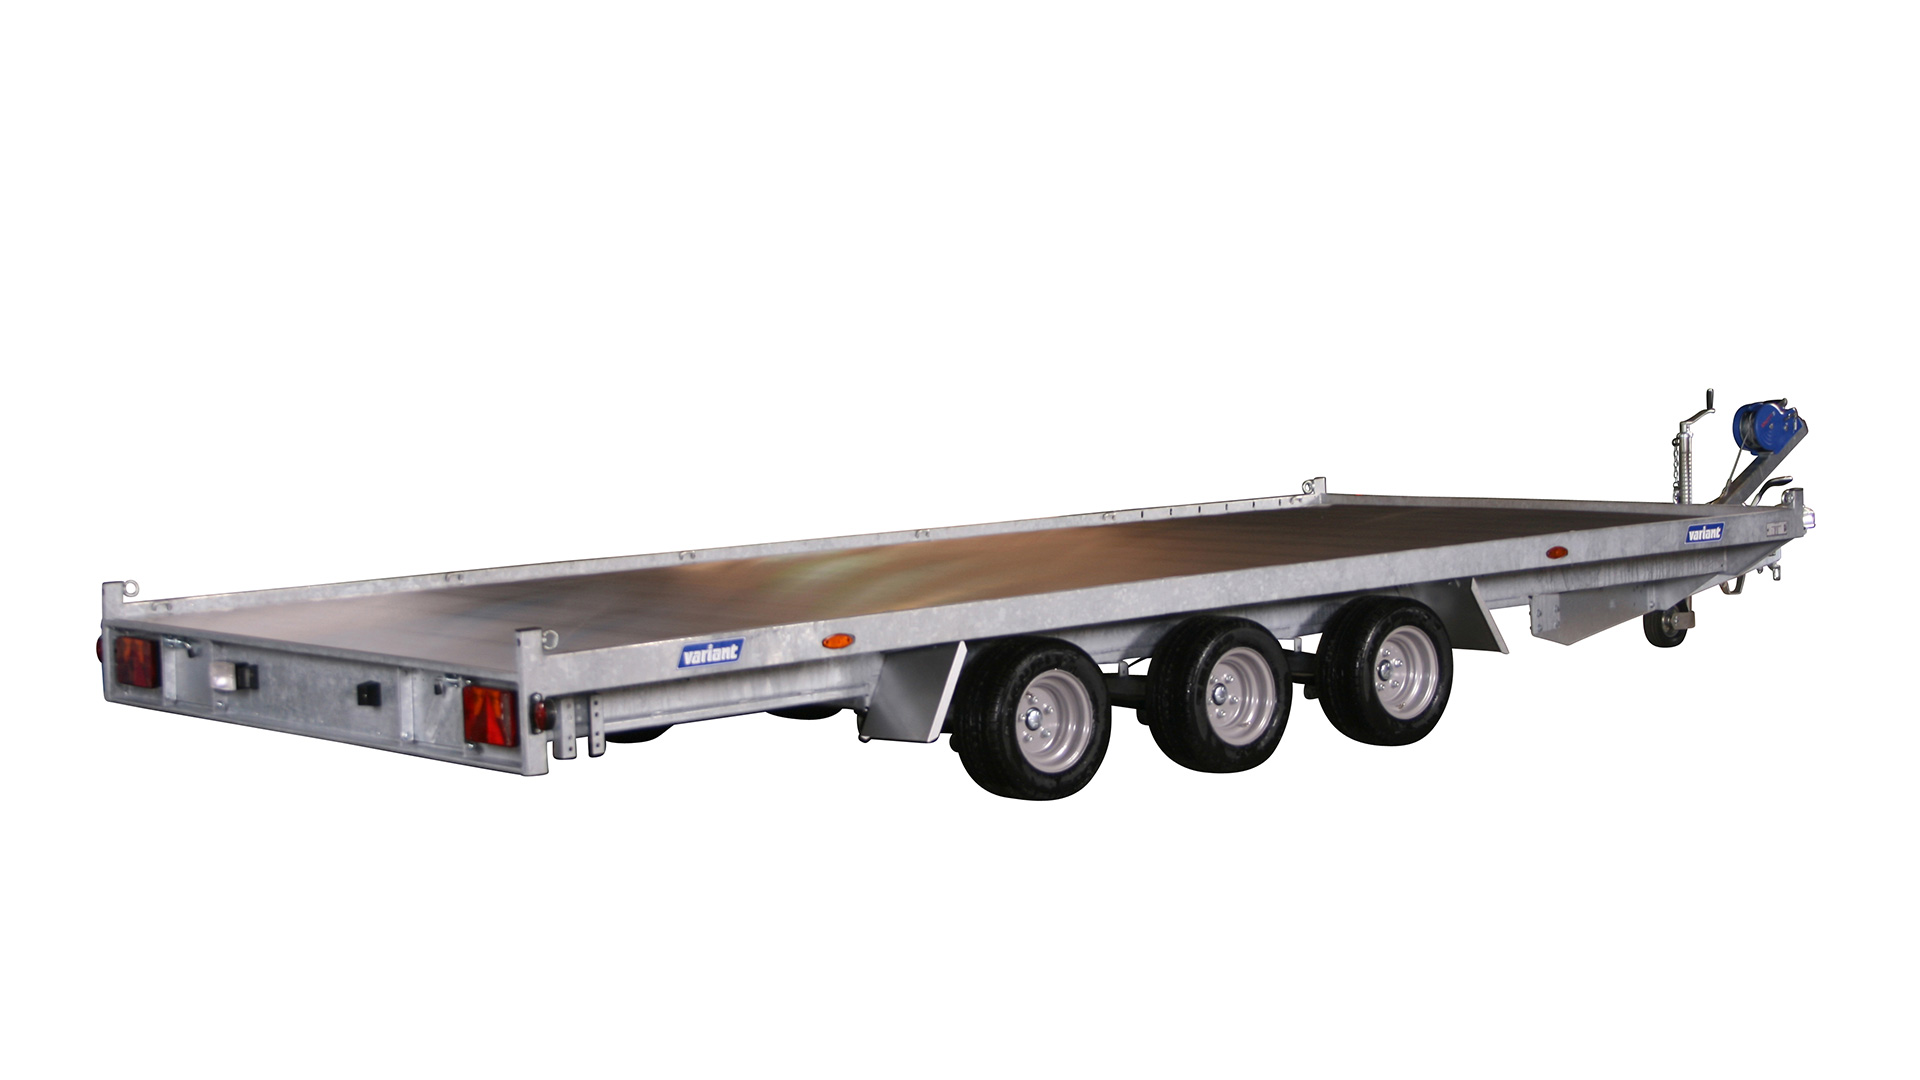 Variant PKW Anhänger Universaltransporter 3522 L5 - 3500 kg,Ladefläche 5,17 x 2,19 m, 3 Achsen